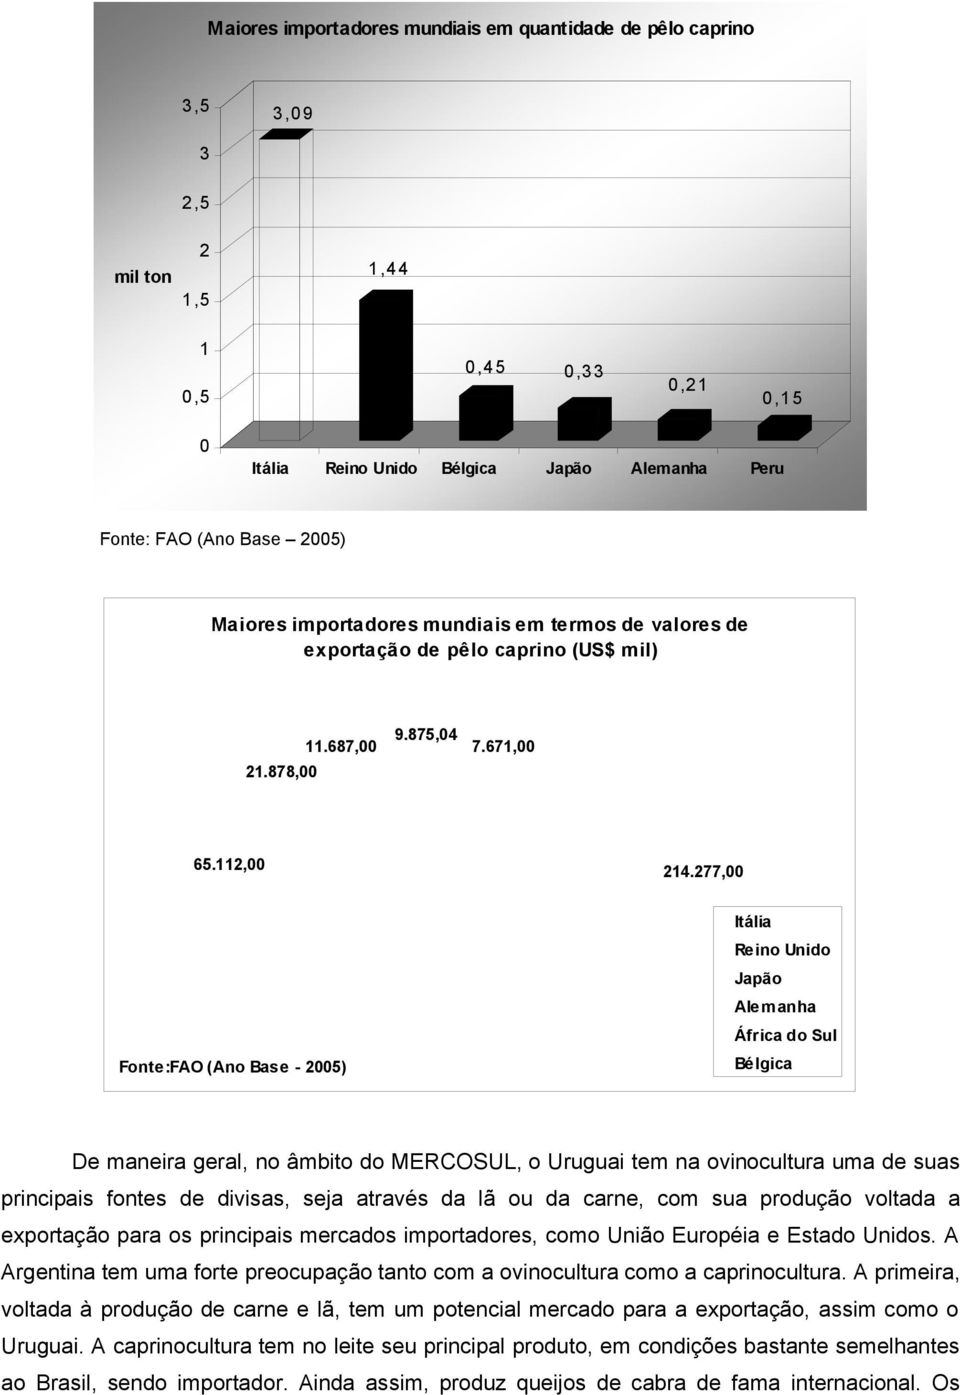 277,00 Fonte:FAO (Ano Base - 2005) Itália Reino Unido Japão Alemanha África do Sul Bélgica De maneira geral, no âmbito do MERCOSUL, o Uruguai tem na ovinocultura uma de suas principais fontes de